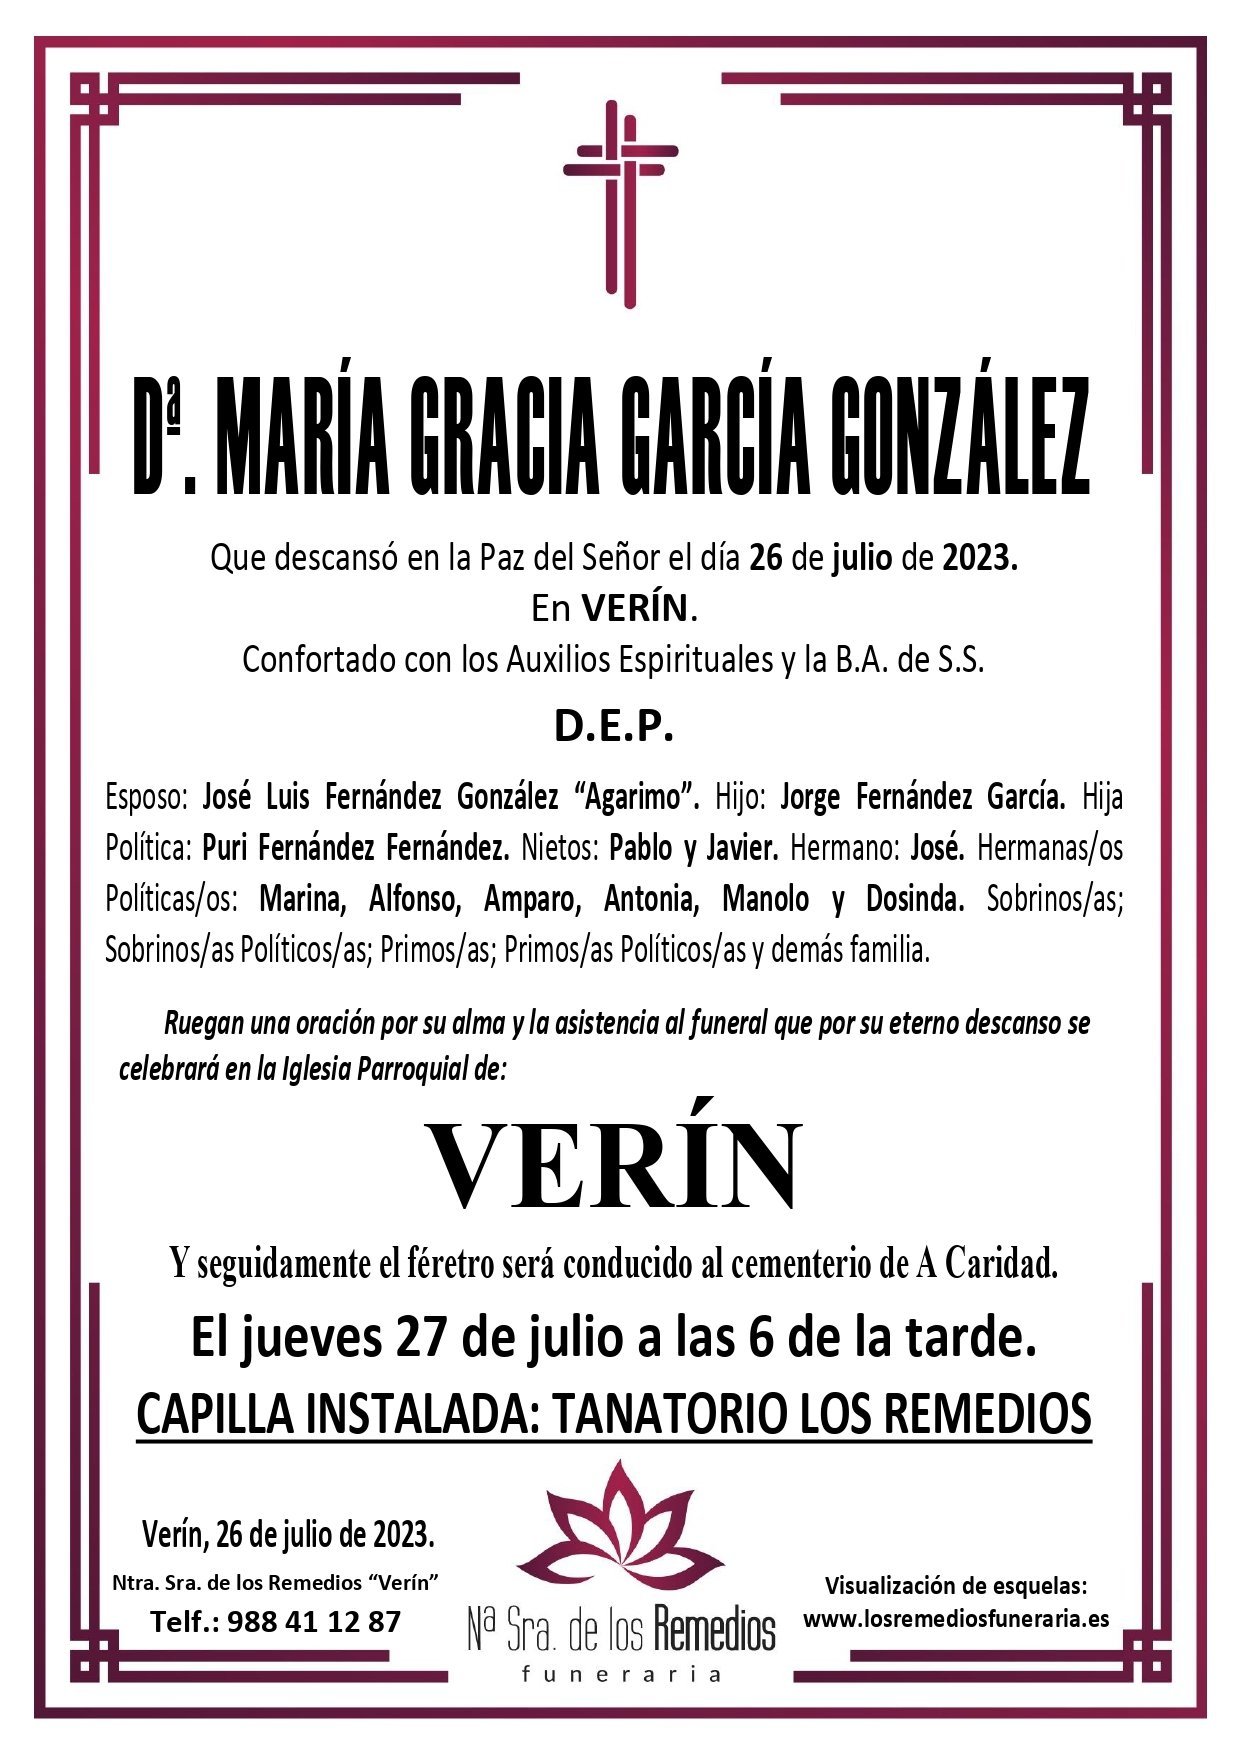 ESQUELAS VERÍN | María Gracia García González